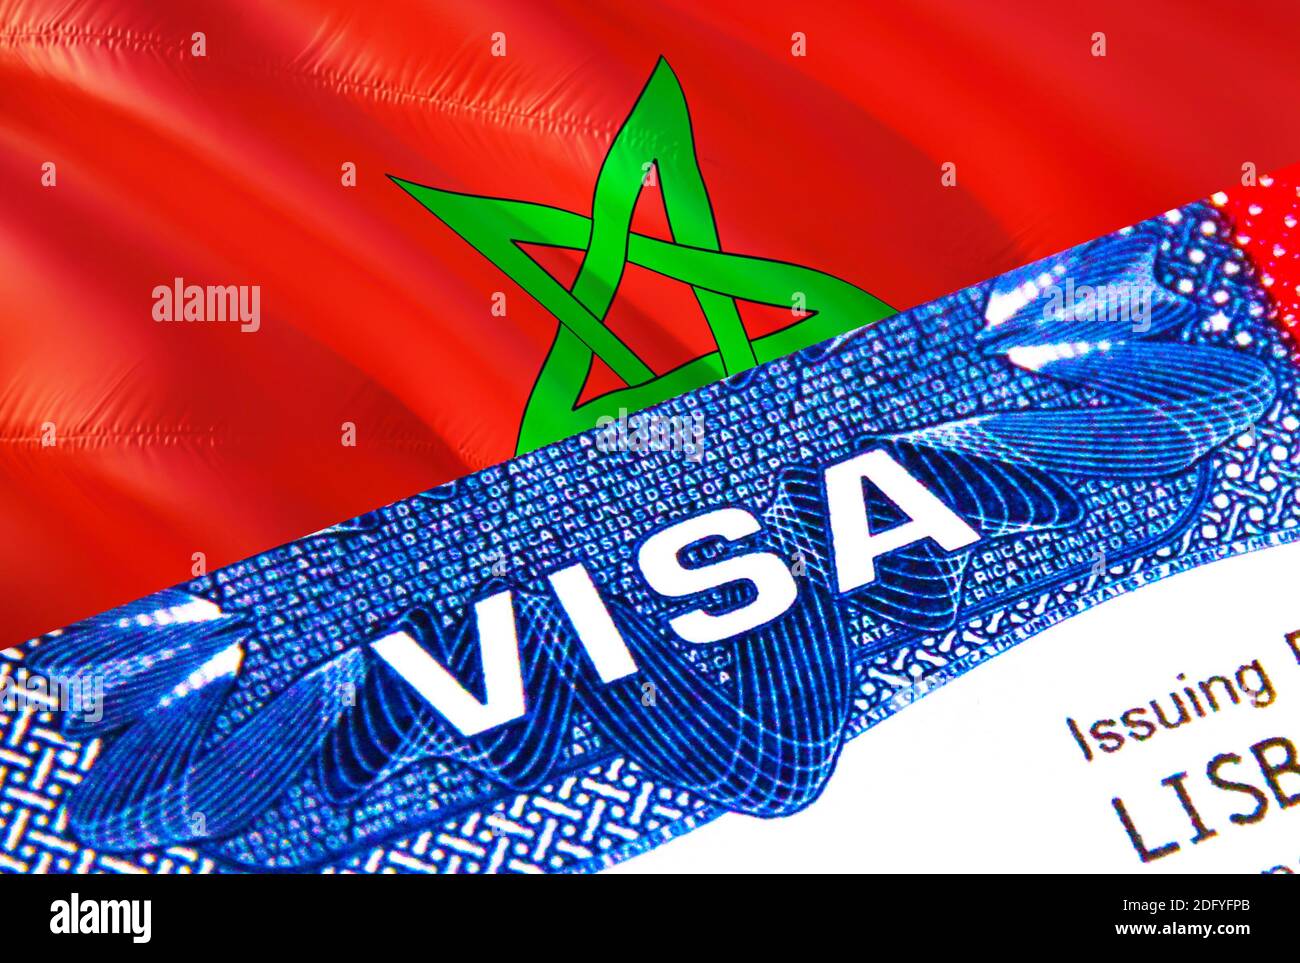 Maroc Visa en passeport. USA immigration Visa pour les citoyens marocains  se concentrant sur le mot VISA. Voyage Maroc visa en identification  nationale gros plan, 3D Photo Stock - Alamy